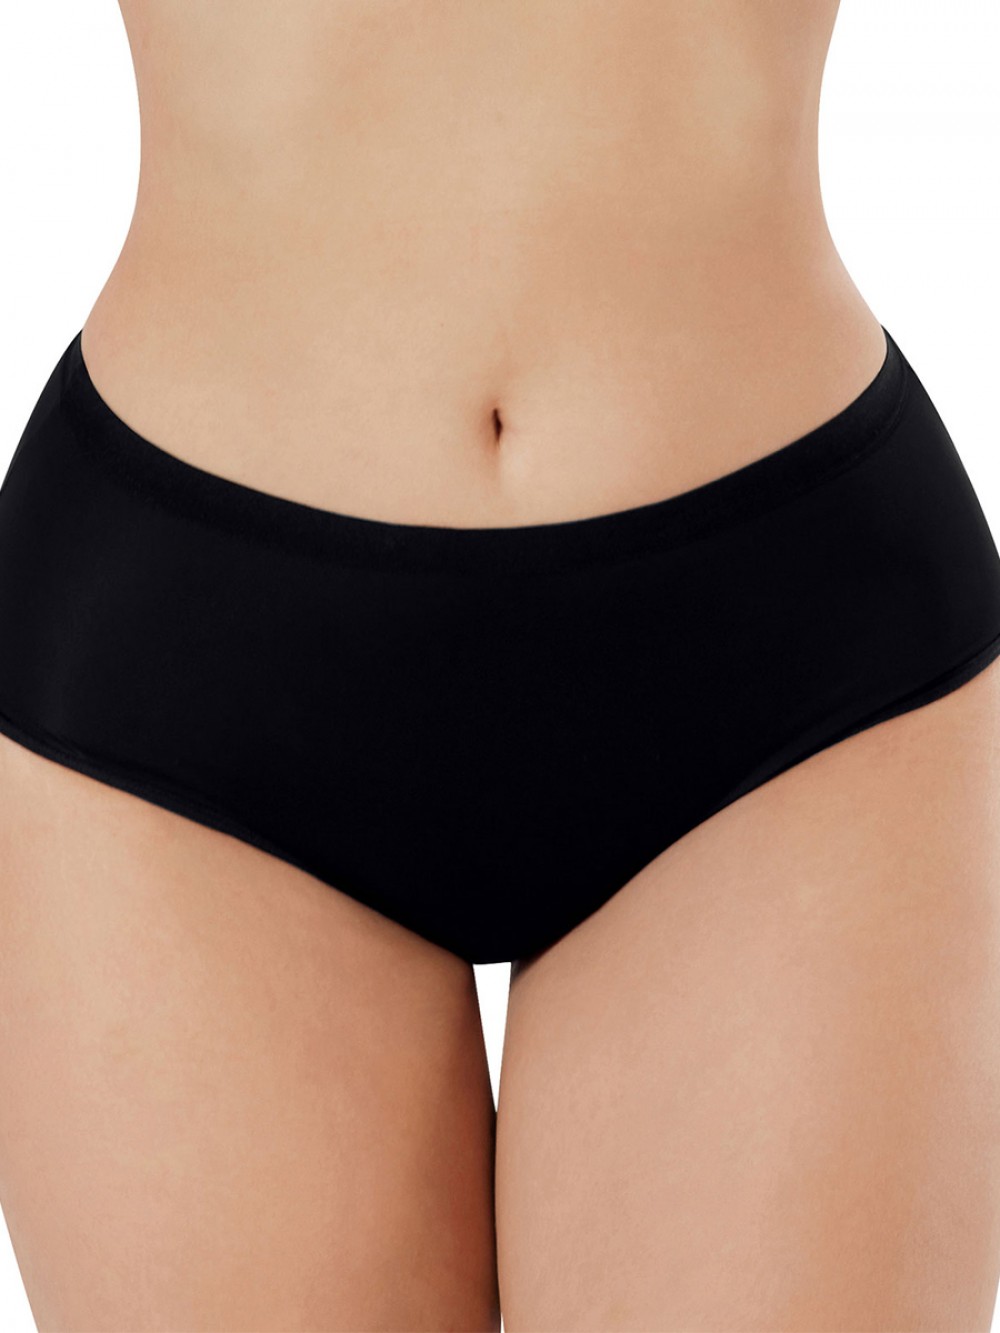 New Design Plus Size High Waist Women Seamless Underwear